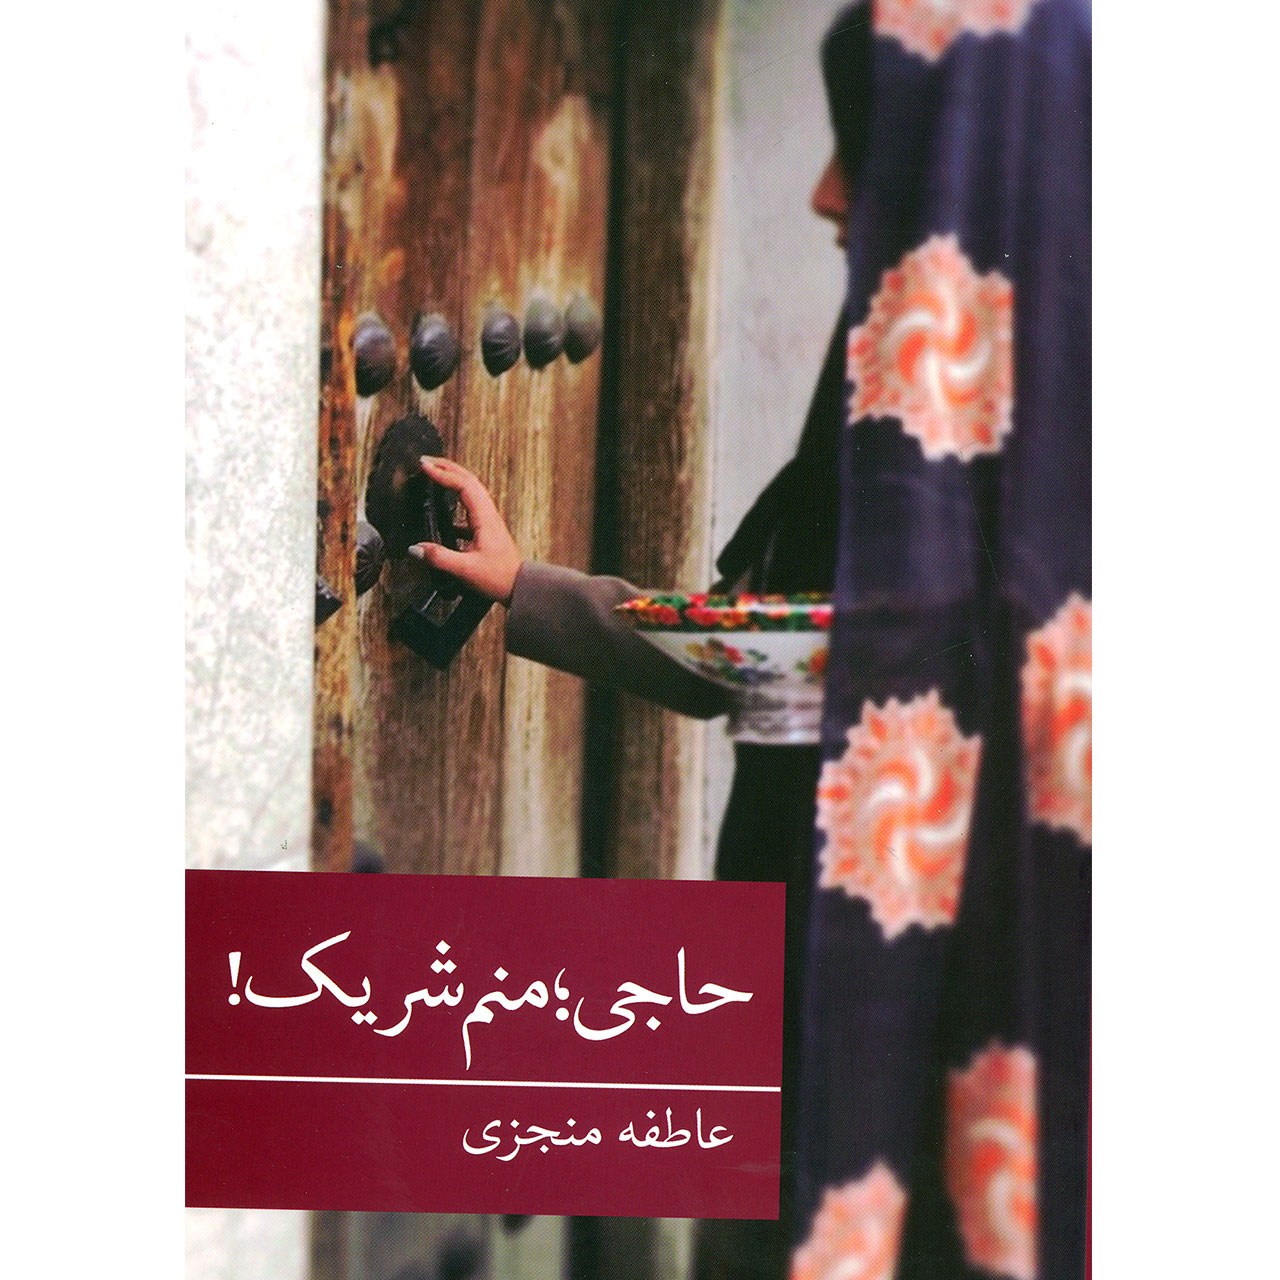 کتاب رمان ایرانی31 (حاجی؛منم شریک!) اثر عاطفه منجزی